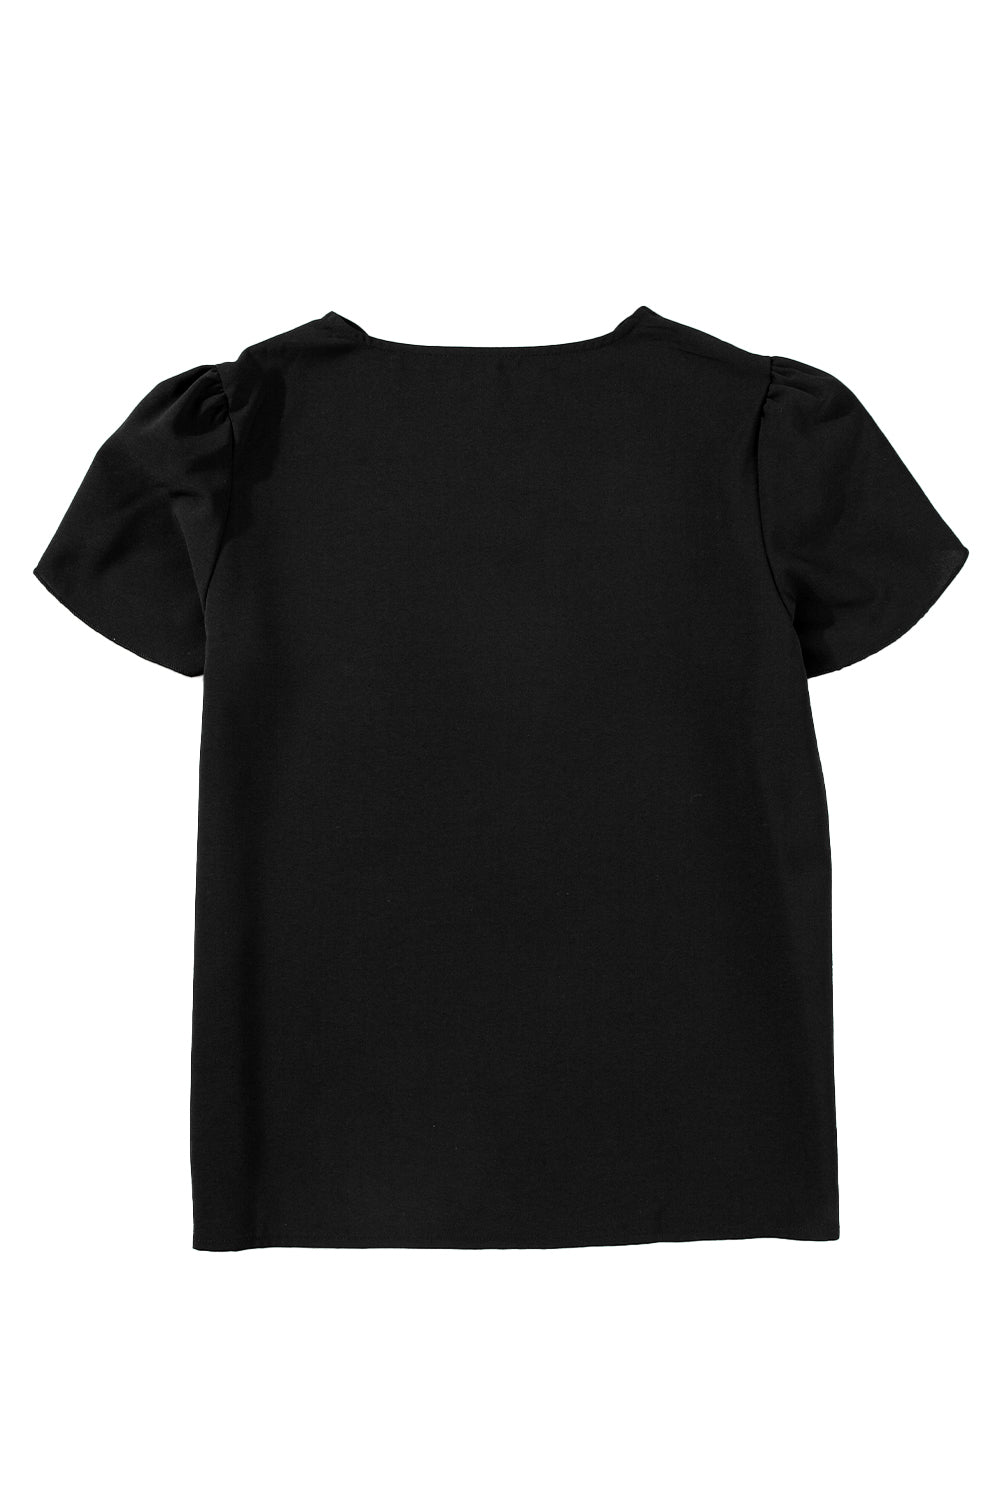 Crna majica s rukavima s laticama s V izrezom